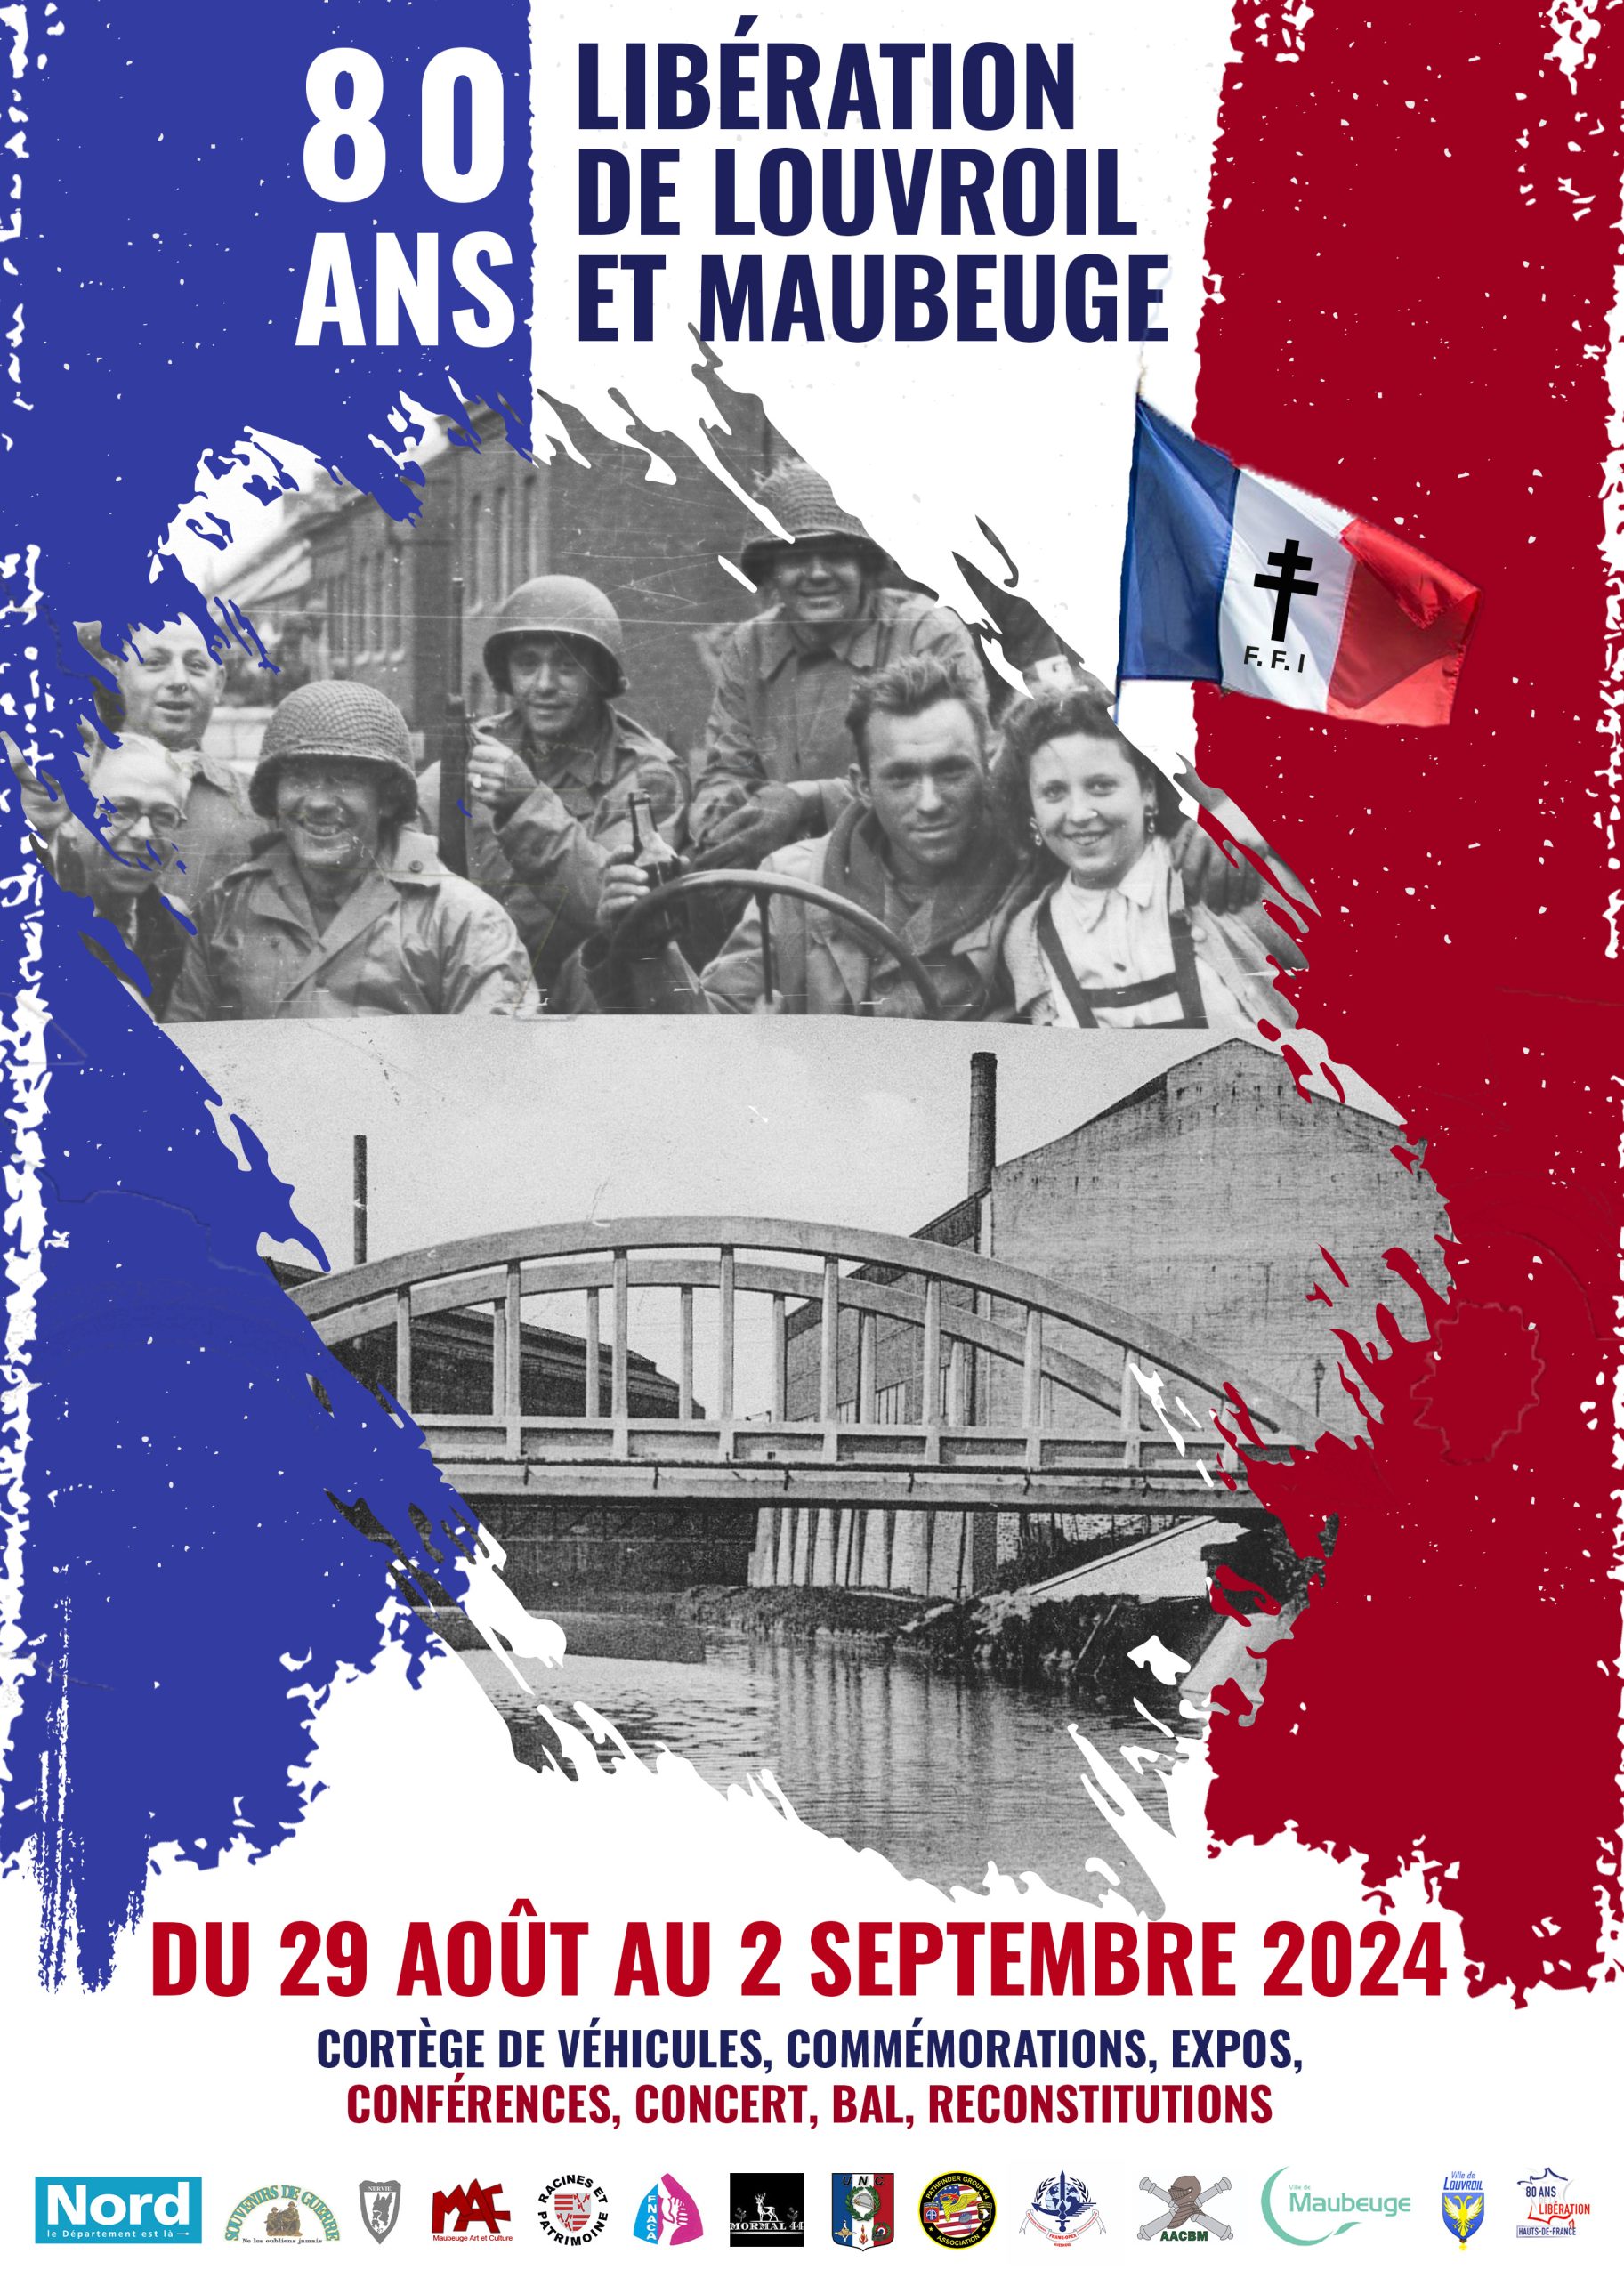 Commémoration de la libération de la ville de Louvroil et de Maubeuge